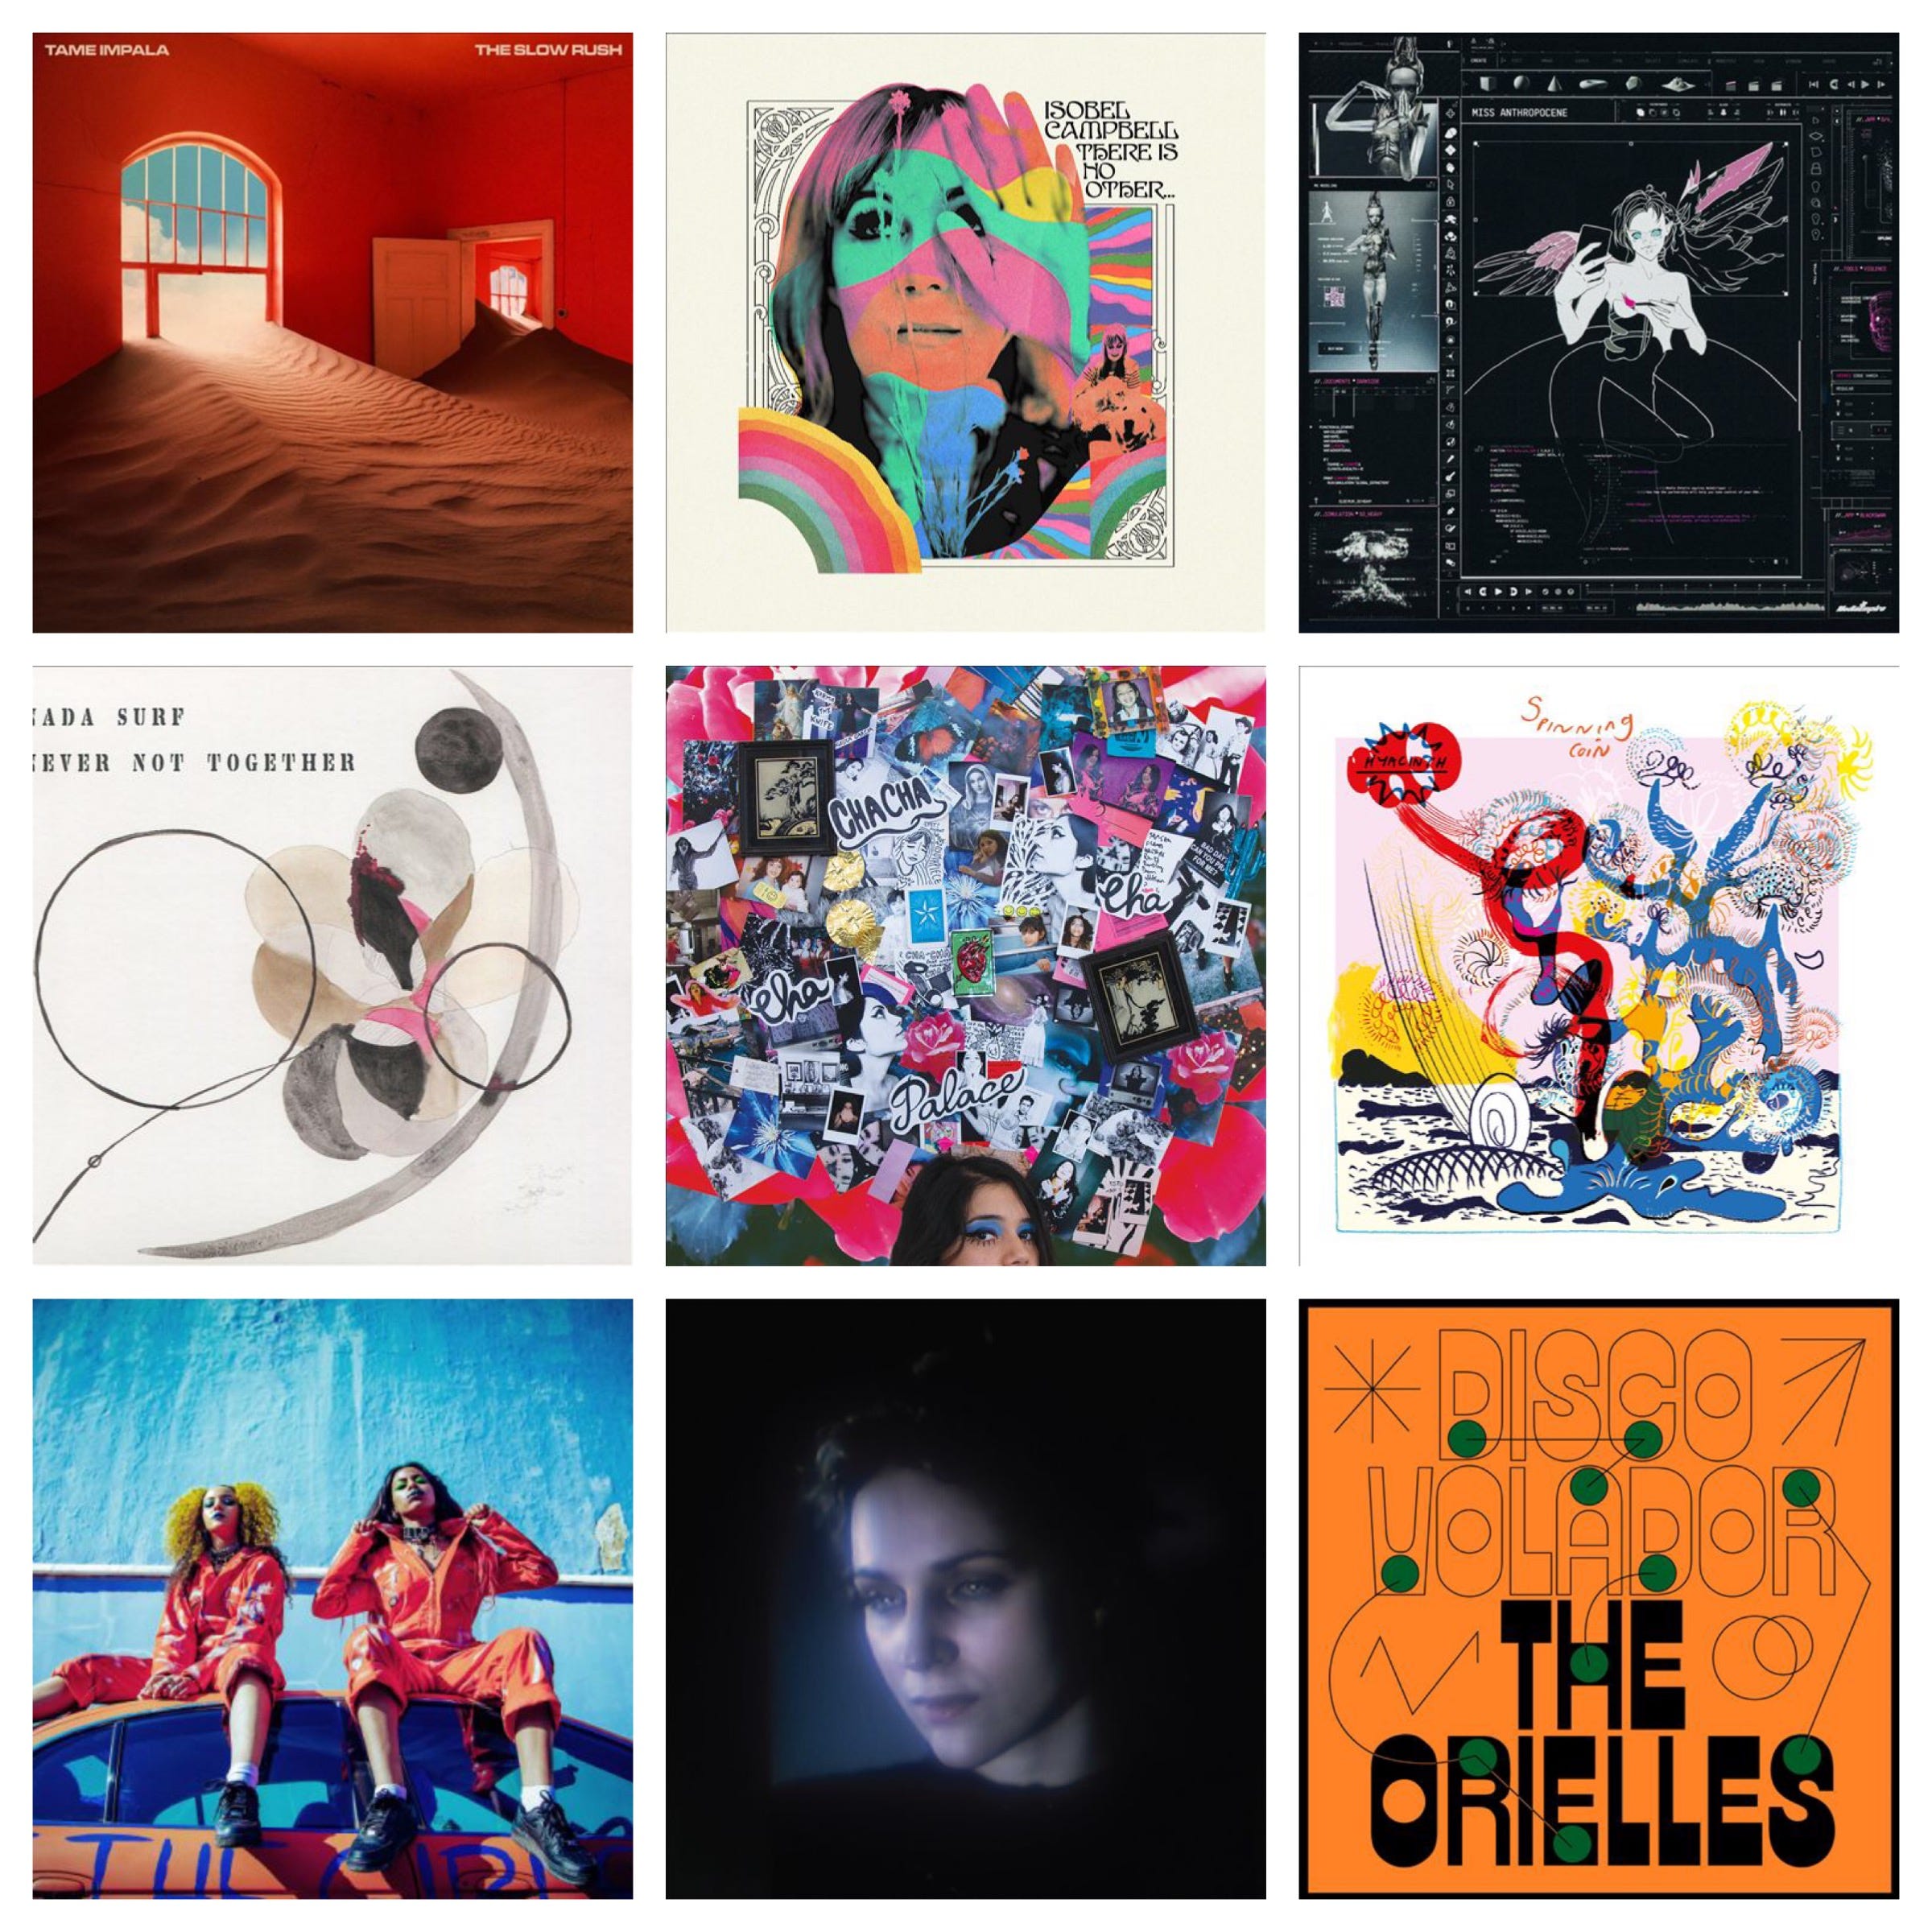 Best Music of February 2020: Album Reviews | Medium